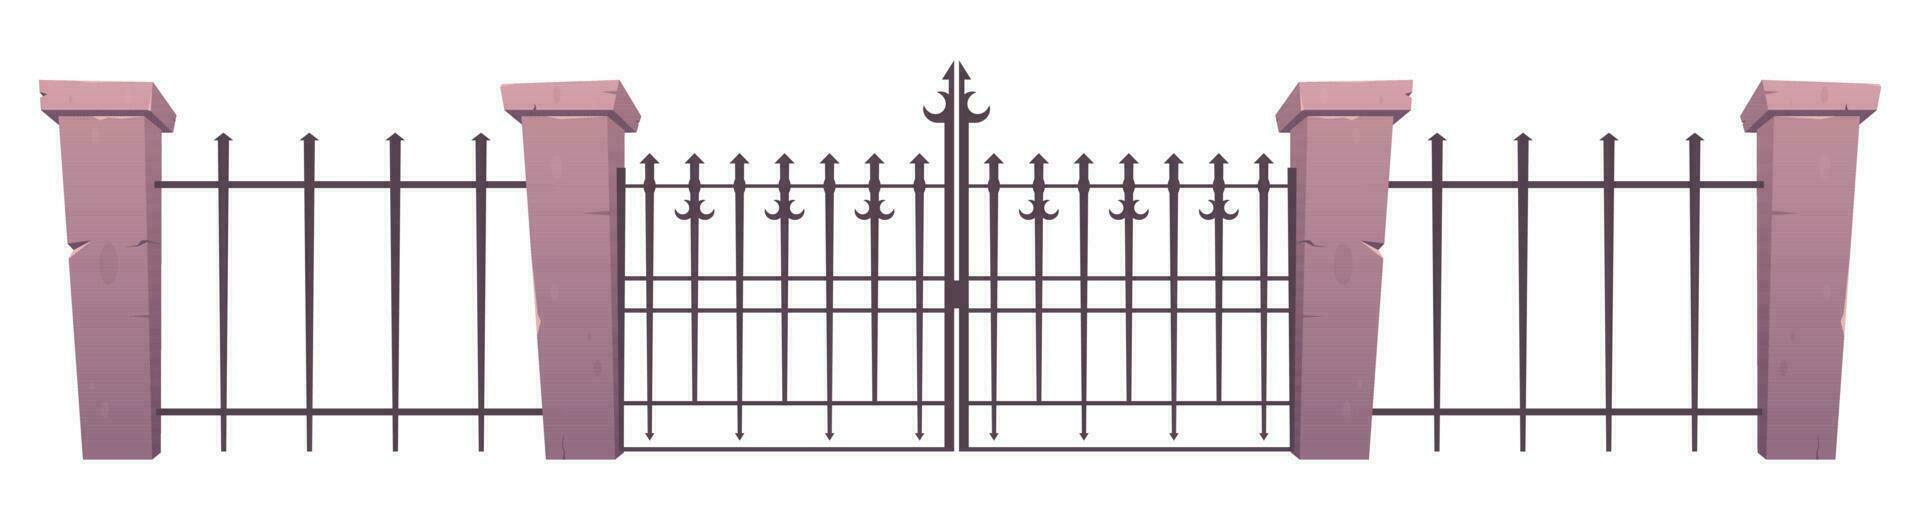 entrée portes et clôture fabriqué de acier et béton dans dessin animé style vecteur illustration